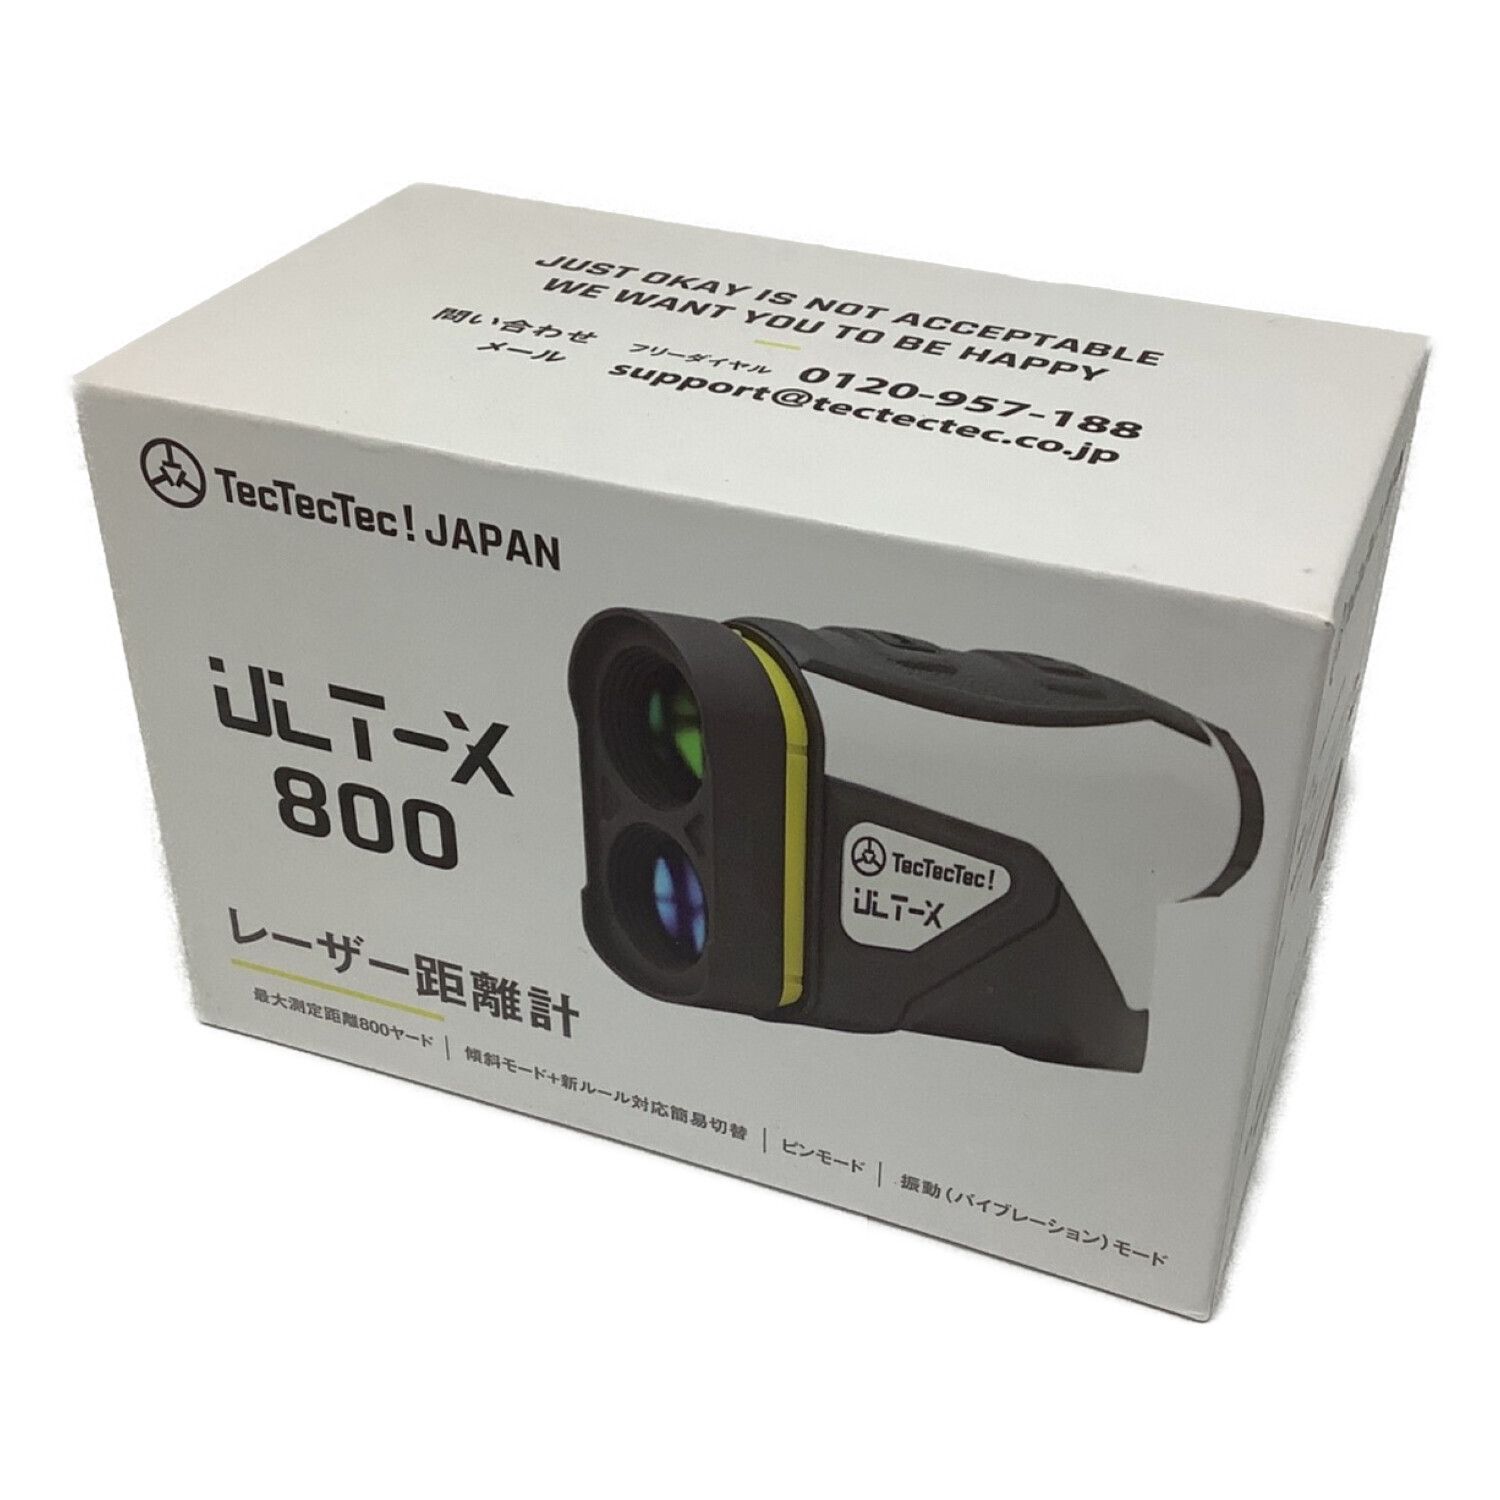 テックテックテック ゴルフレーザー距離測定器 ULT-X 800 - ゴルフ